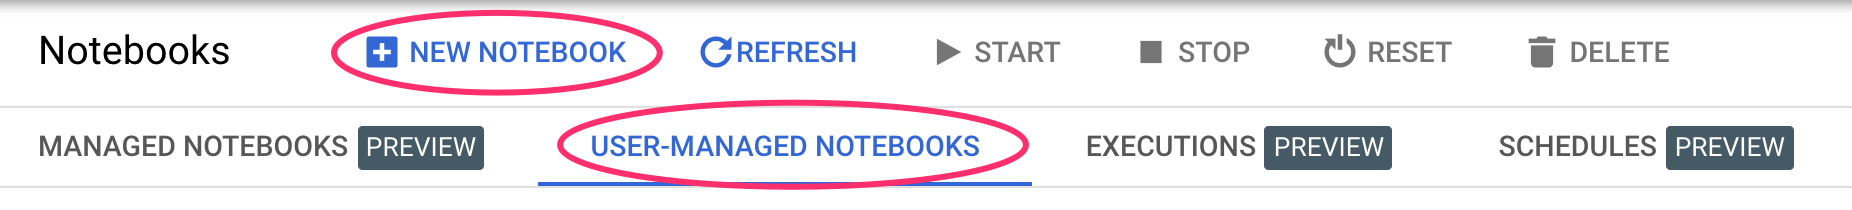 Neues Notebook erstellen